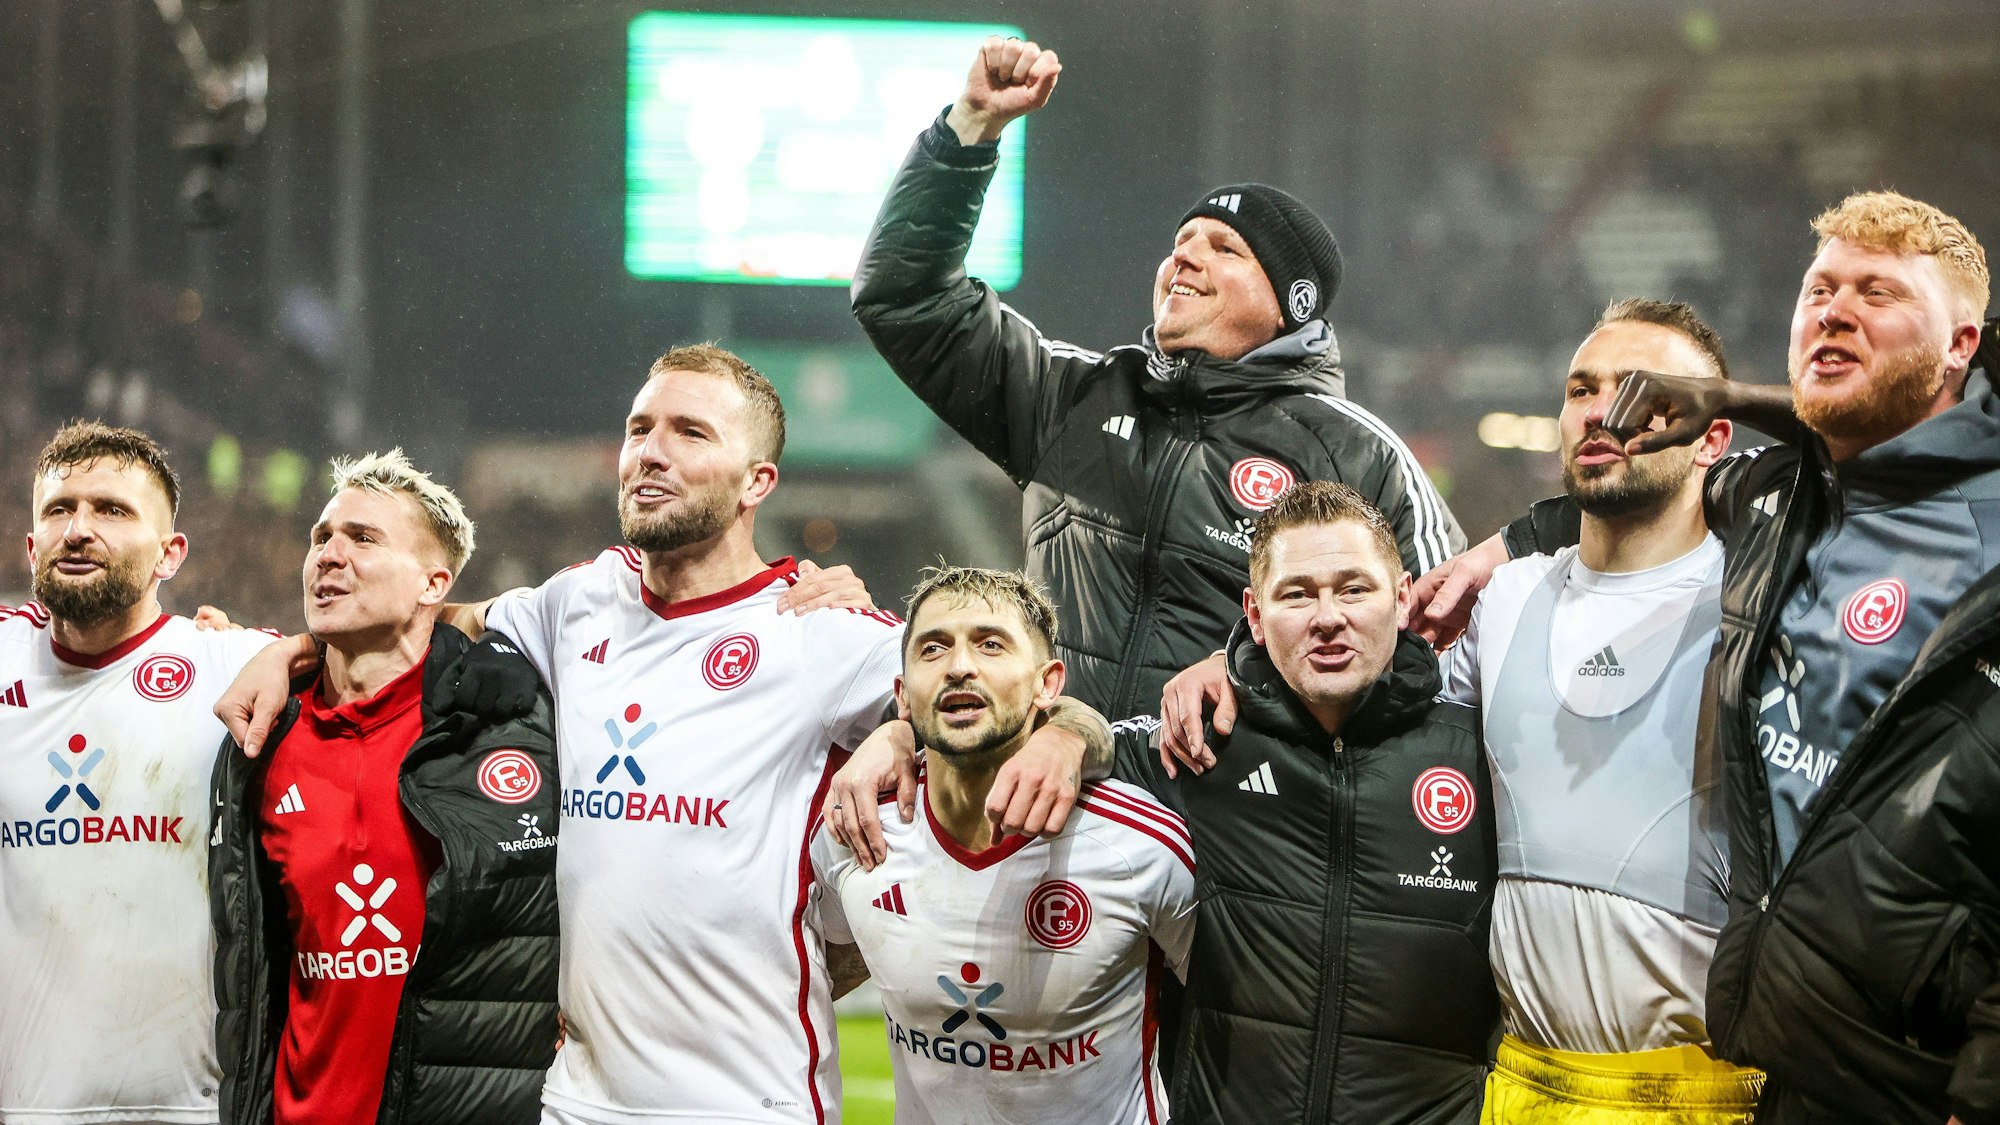 Spieler und Mitarbeiter von Fortuna Düsseldorf jubeln gemeinsam nach dem Sieg im Pokal-Spiel beim FC St. Pauli.